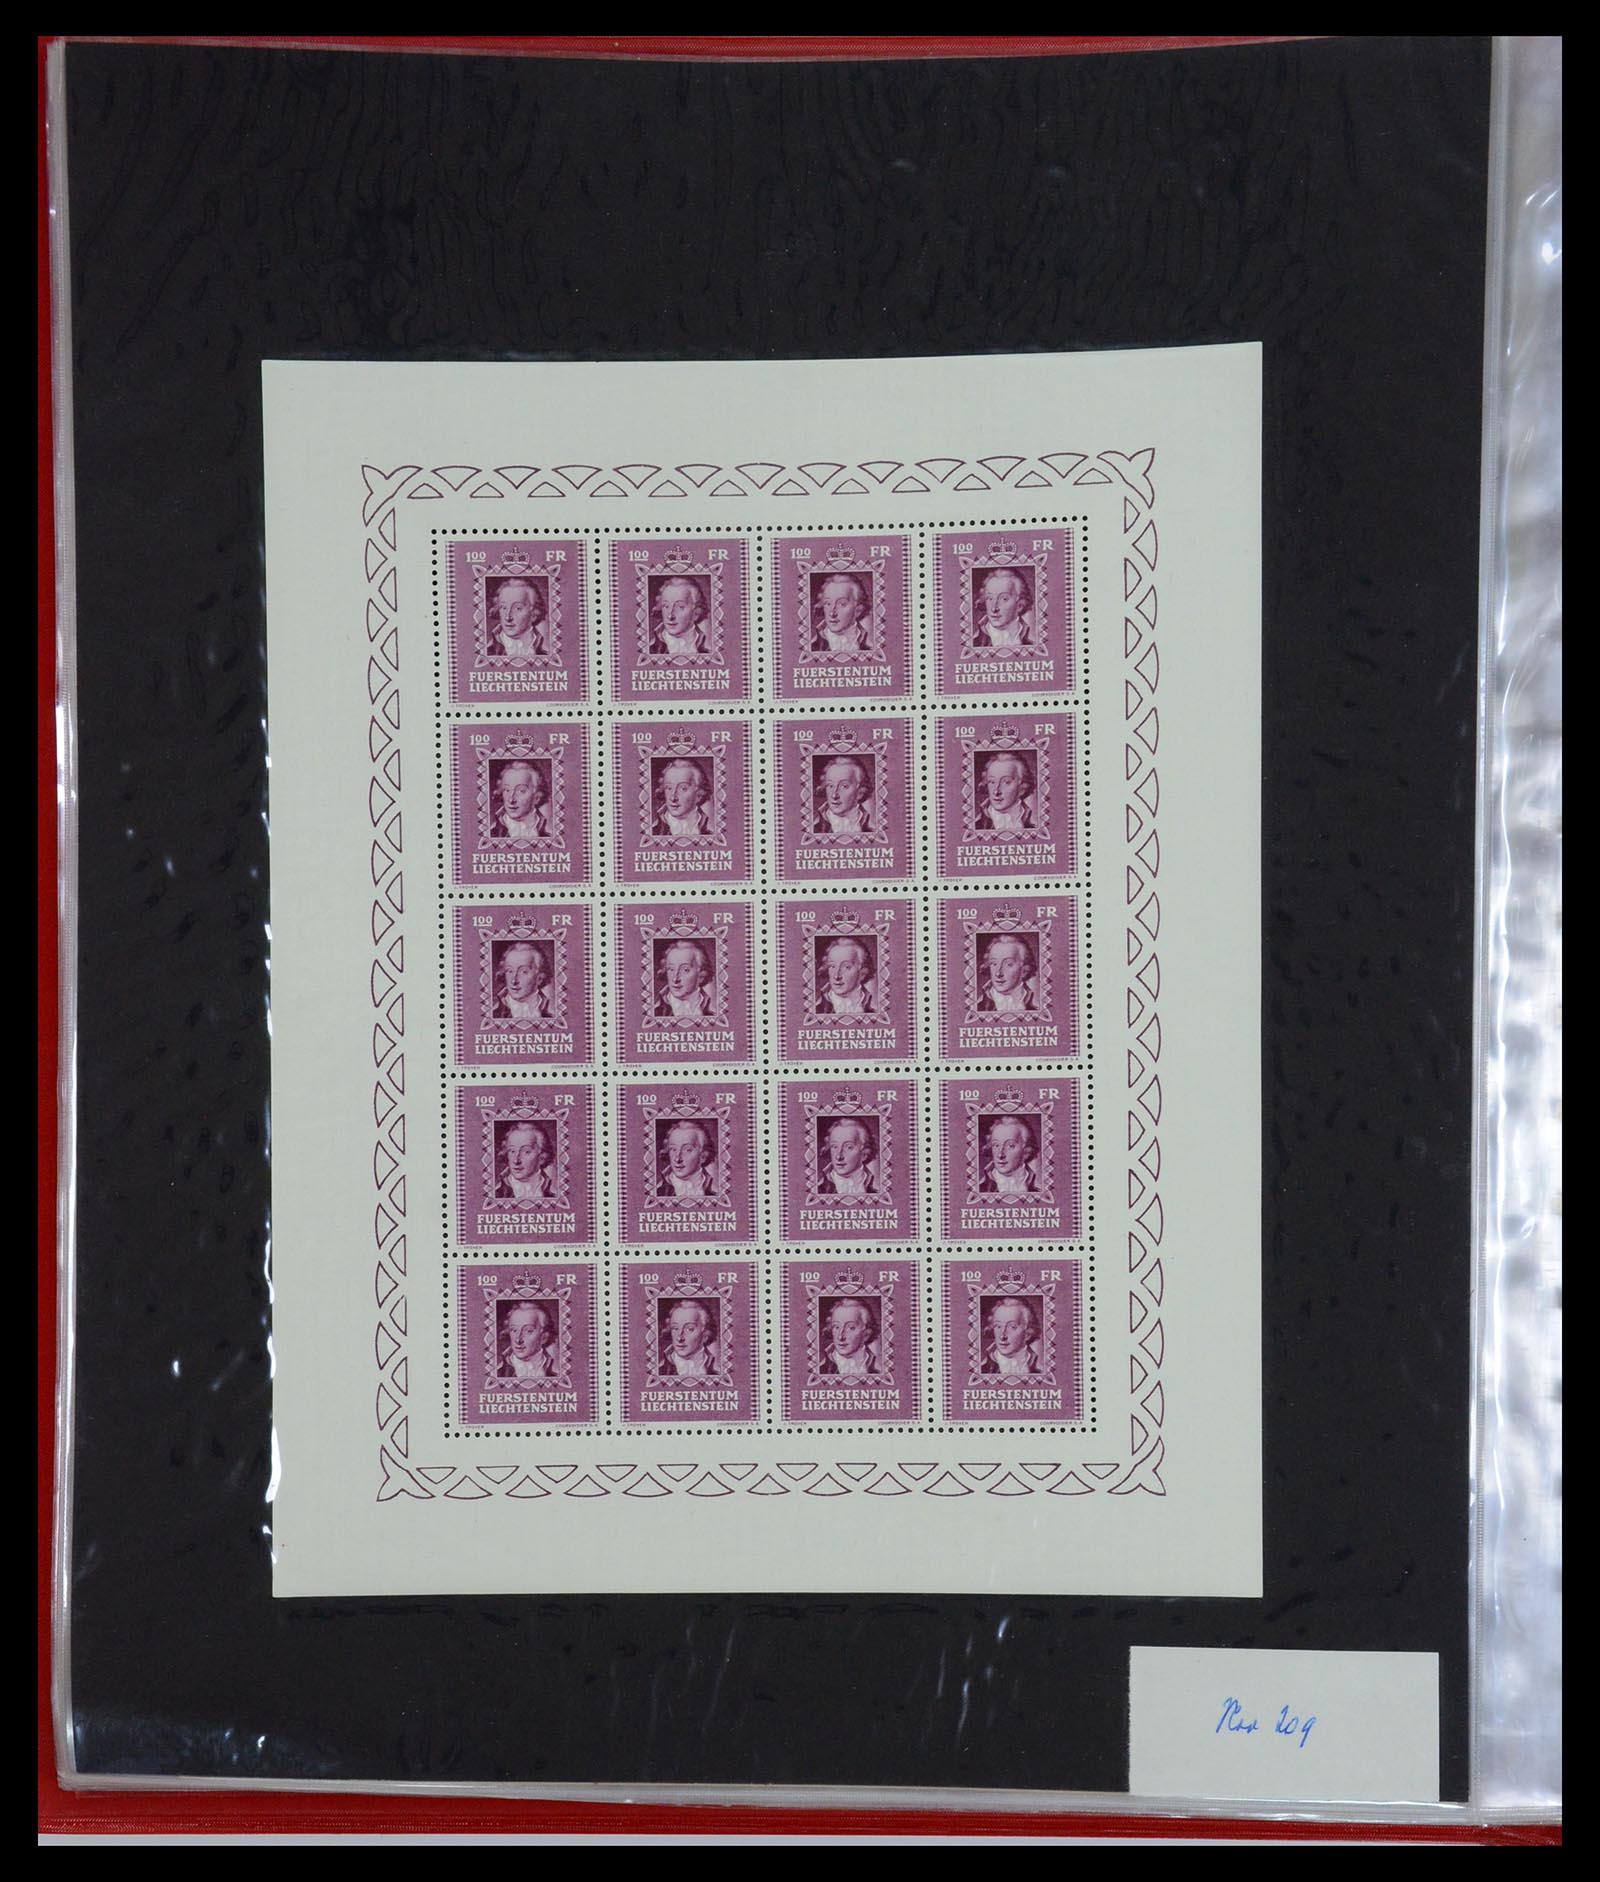 36280 024 - Stamp collection 36280 Liechtenstein souvenir sheets and sheetlets 1934-